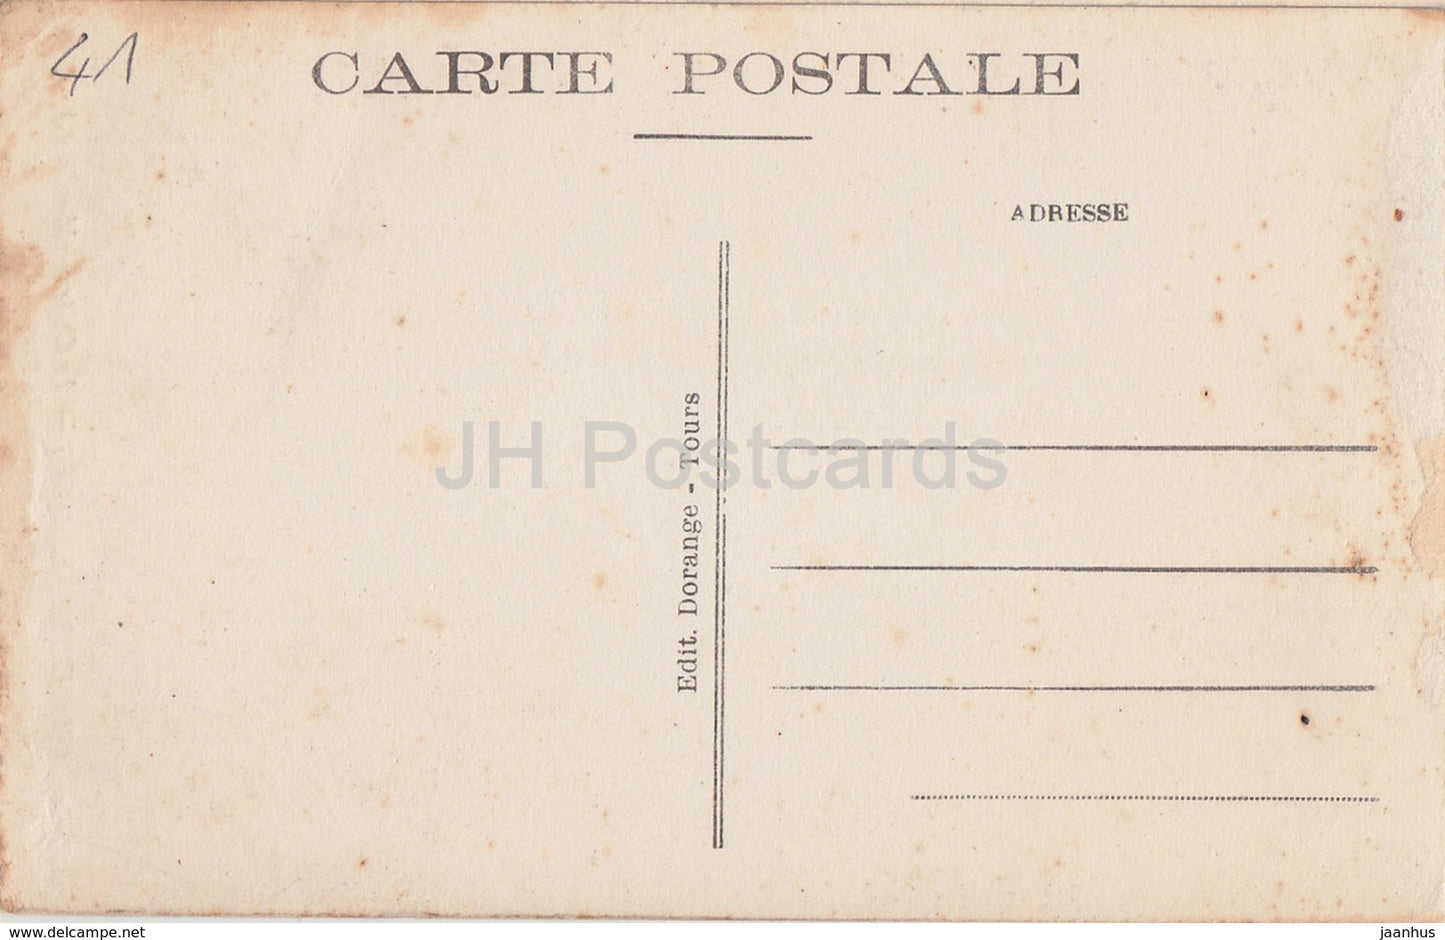 Chambord - Le Chateau - Caissons de plafond aux armes de Francois Ier - castle - 24 - old postcard - France - unused